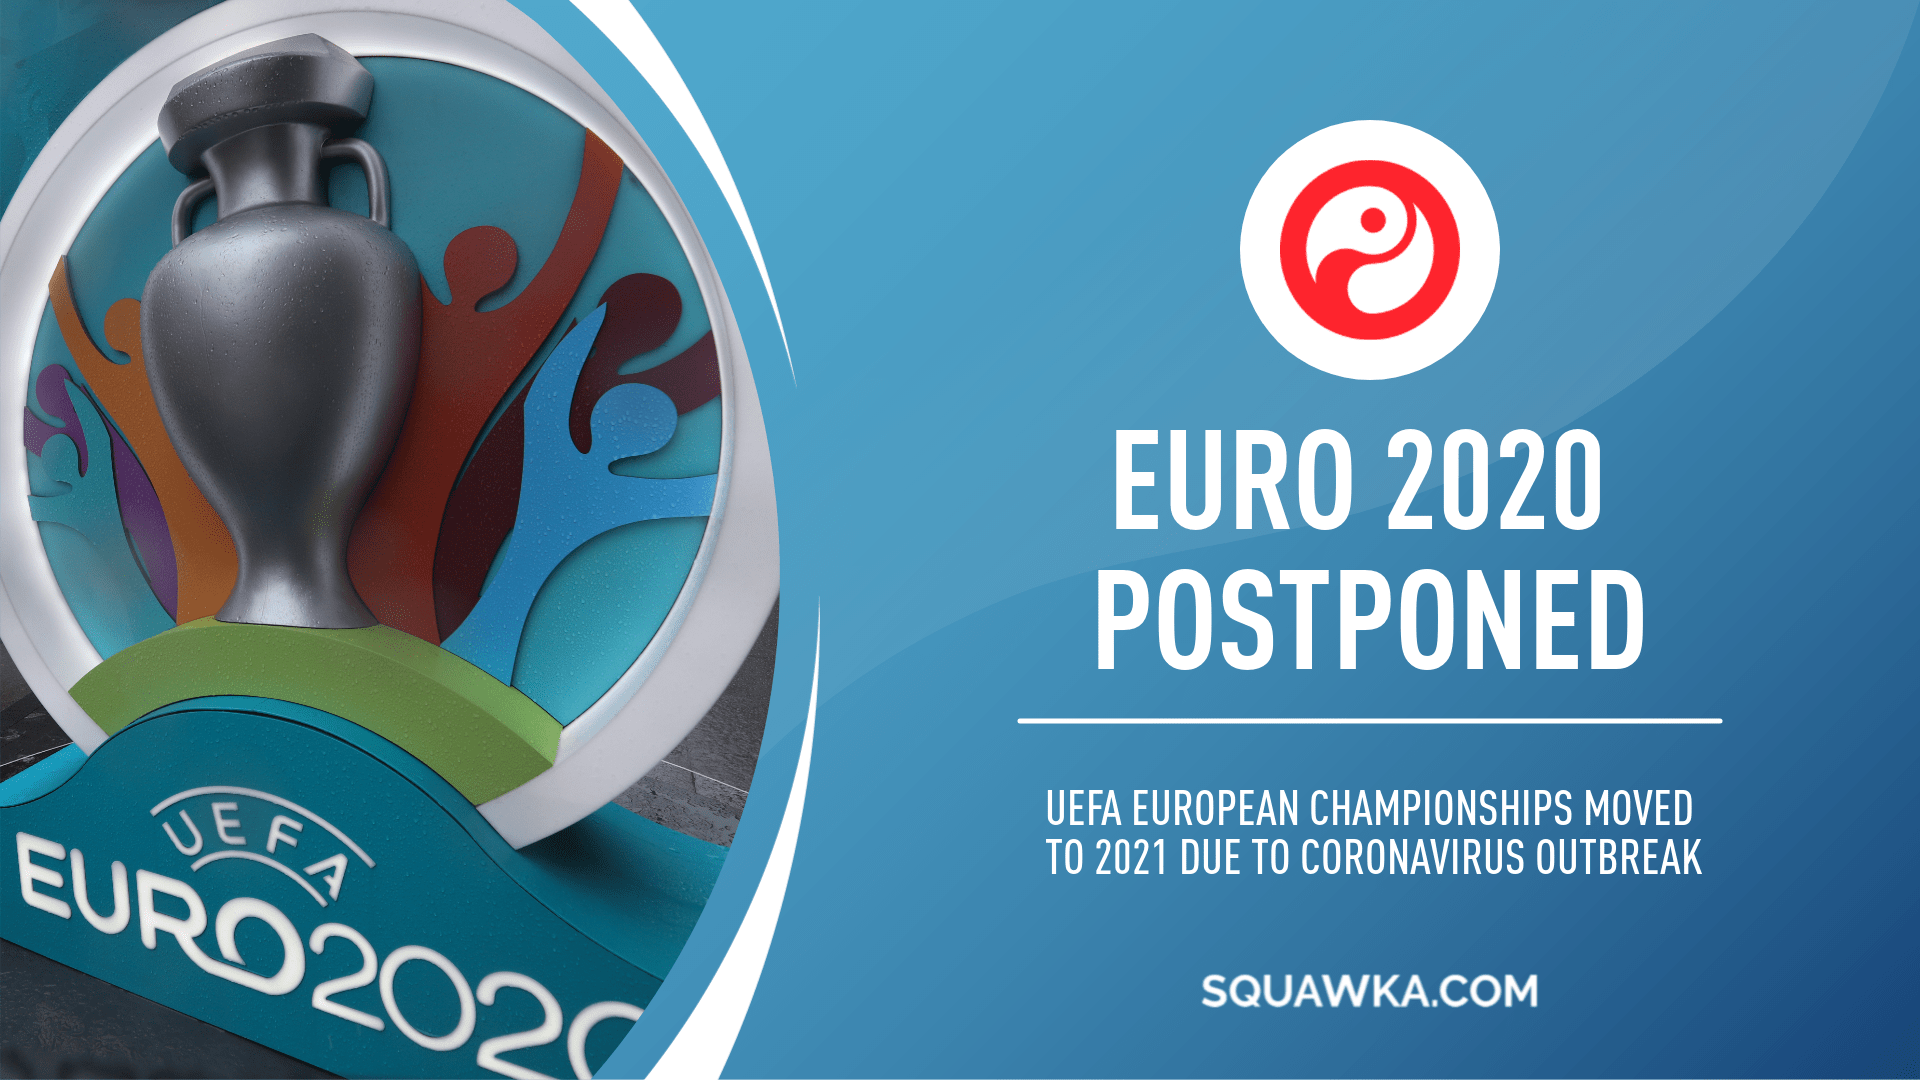 Uefa have postponed Euros until 2021 due to coronarvirus outbreak